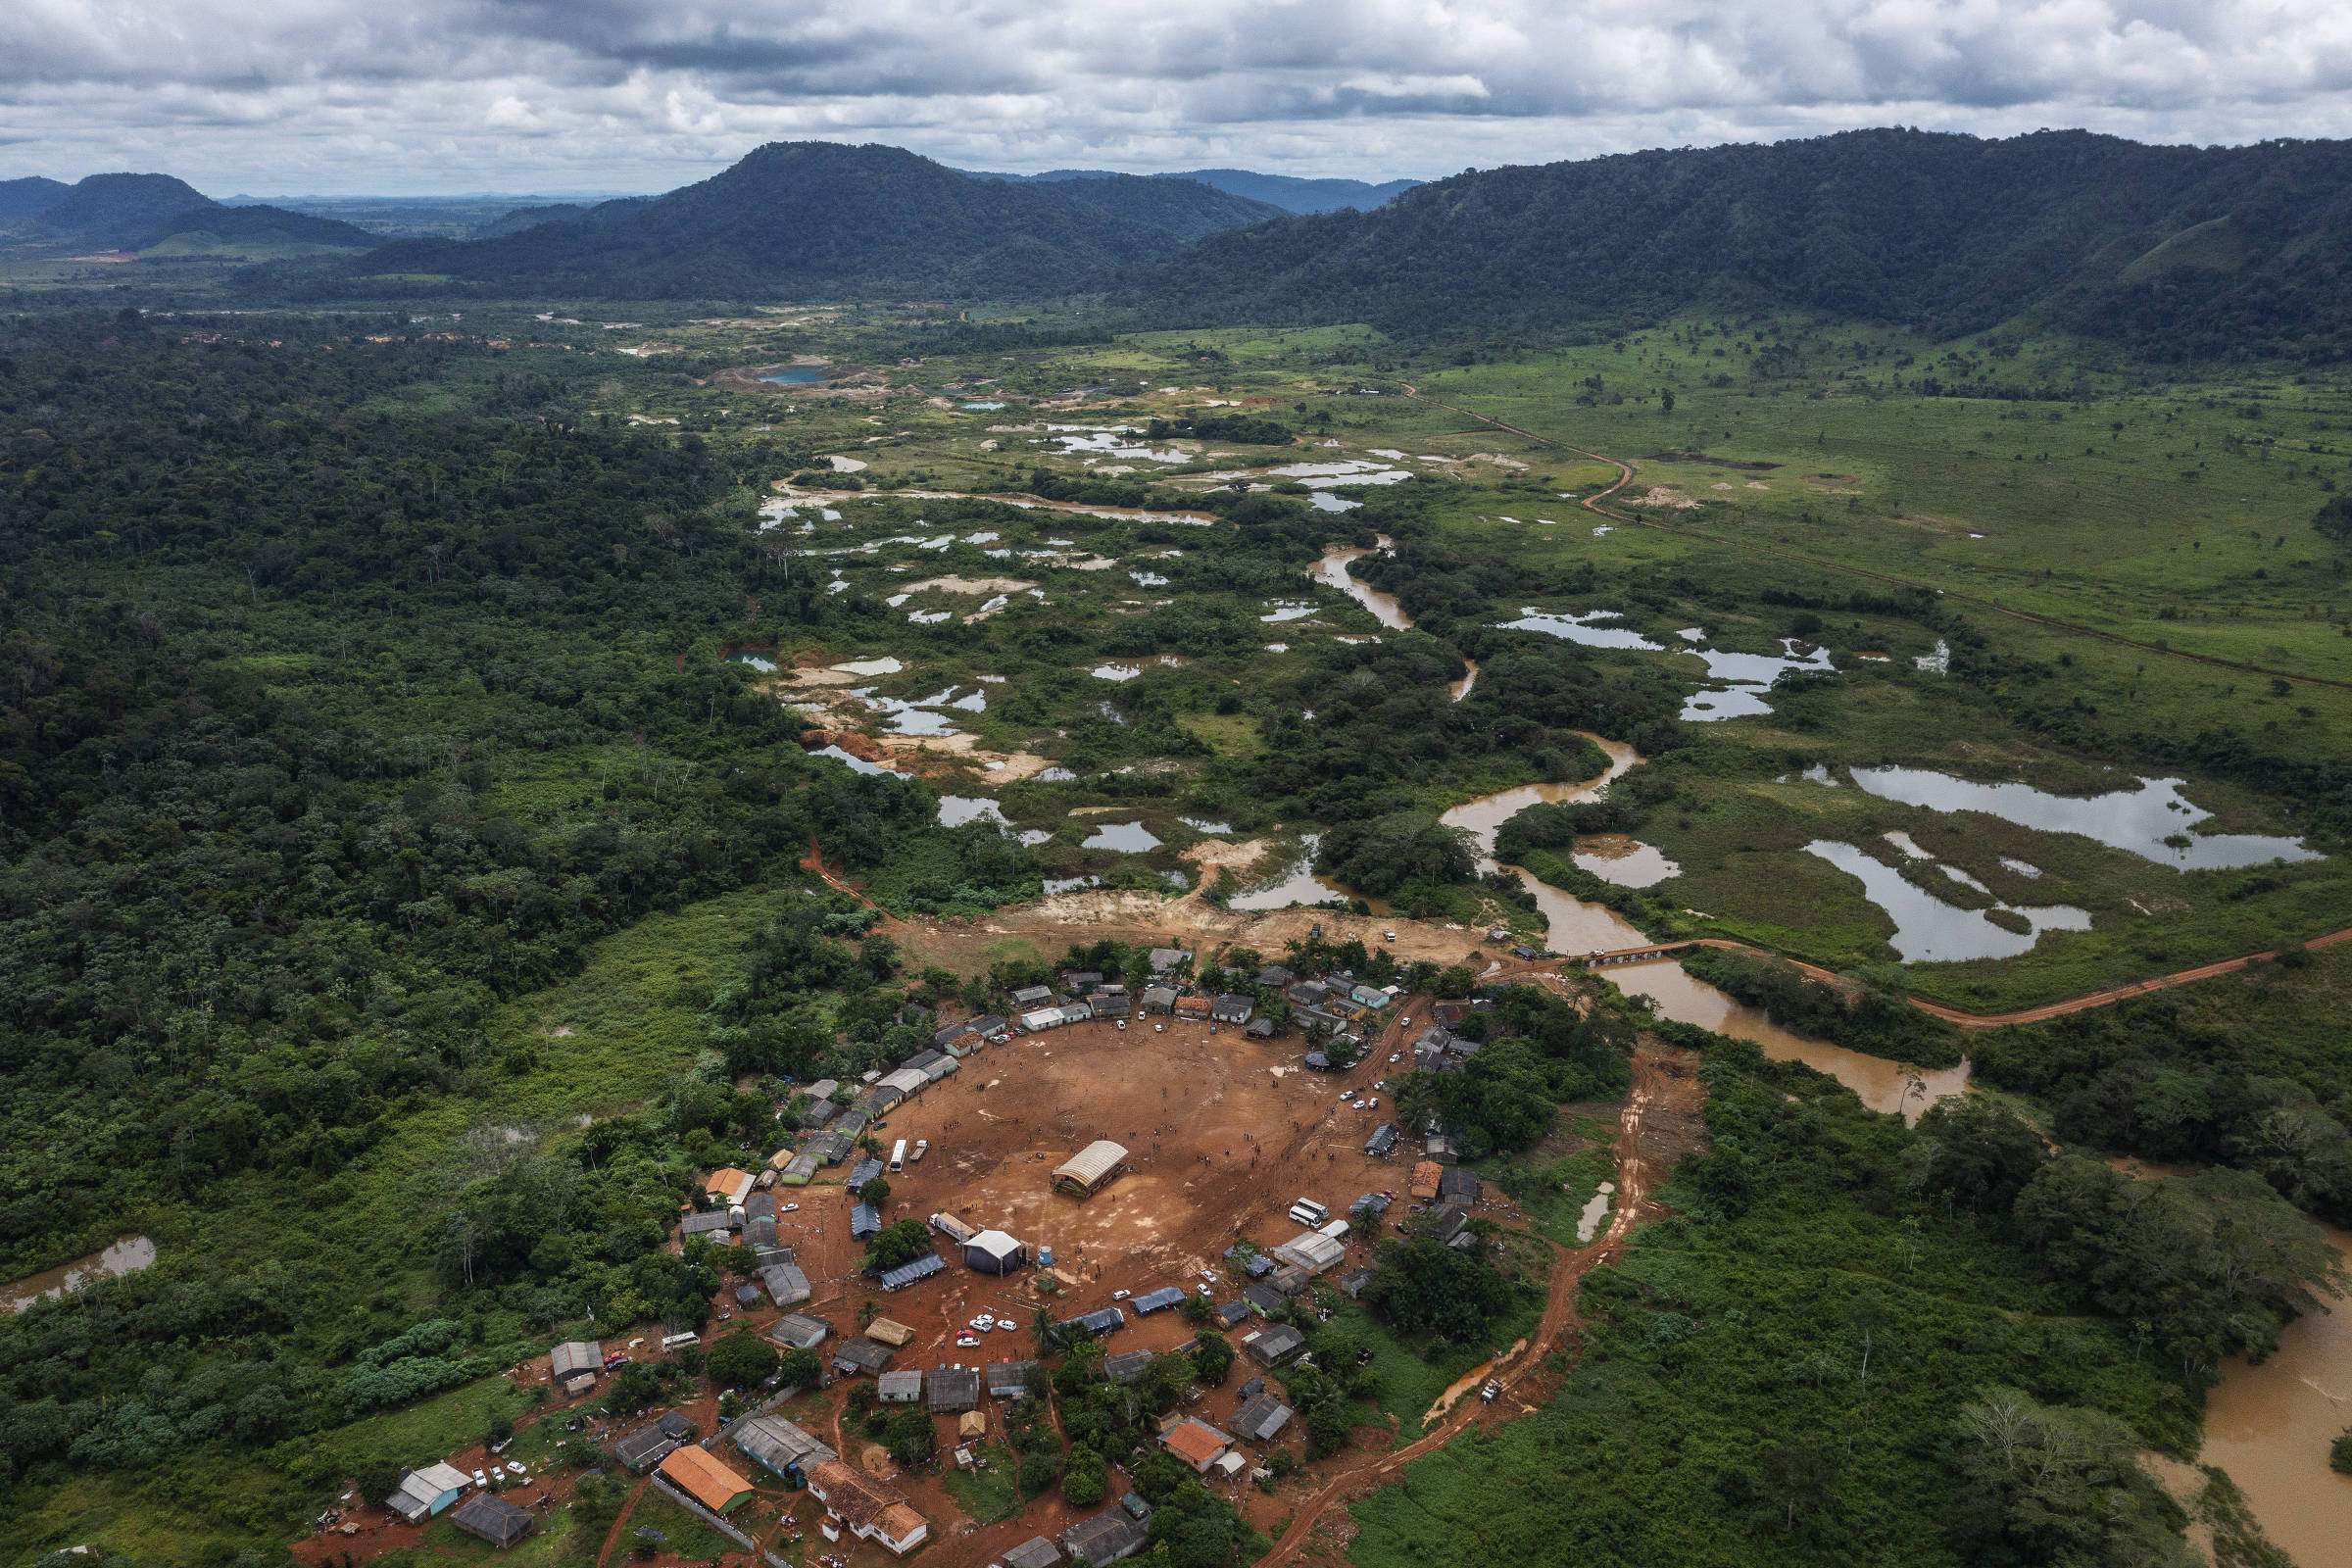 Vista aérea da aldeia com áreas abertas de garimpo muito próximas das casas da aldeia